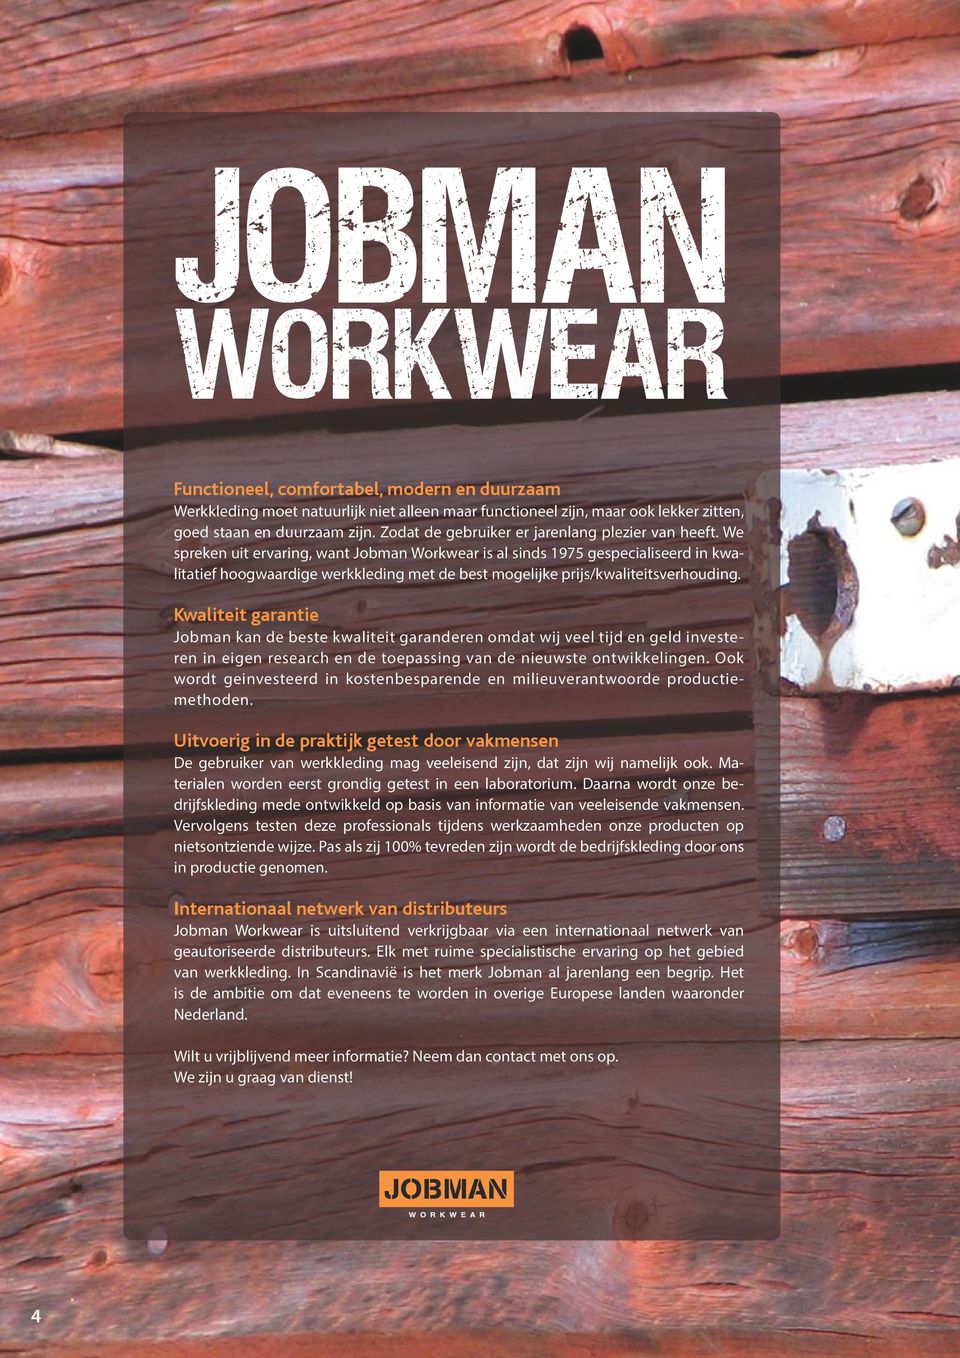 We spreken uit ervaring, want Jobman Workwear is al sinds 1975 gespecialiseerd in kwalitatief hoogwaardige werkkleding met de best mogelijke prijs/kwaliteitsverhouding.